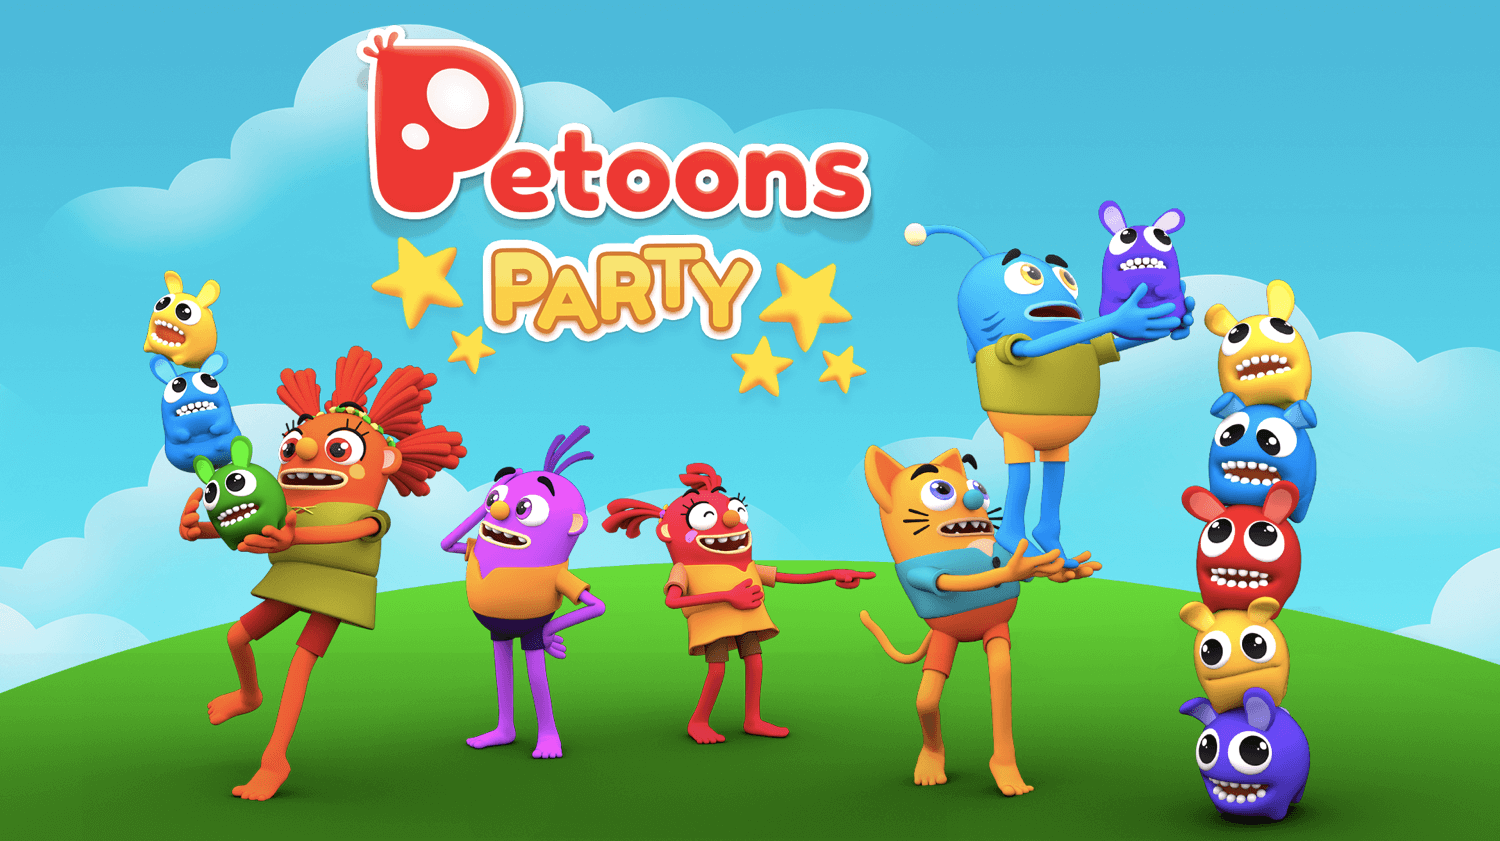 Petoons Party ya está disponible en formato físico